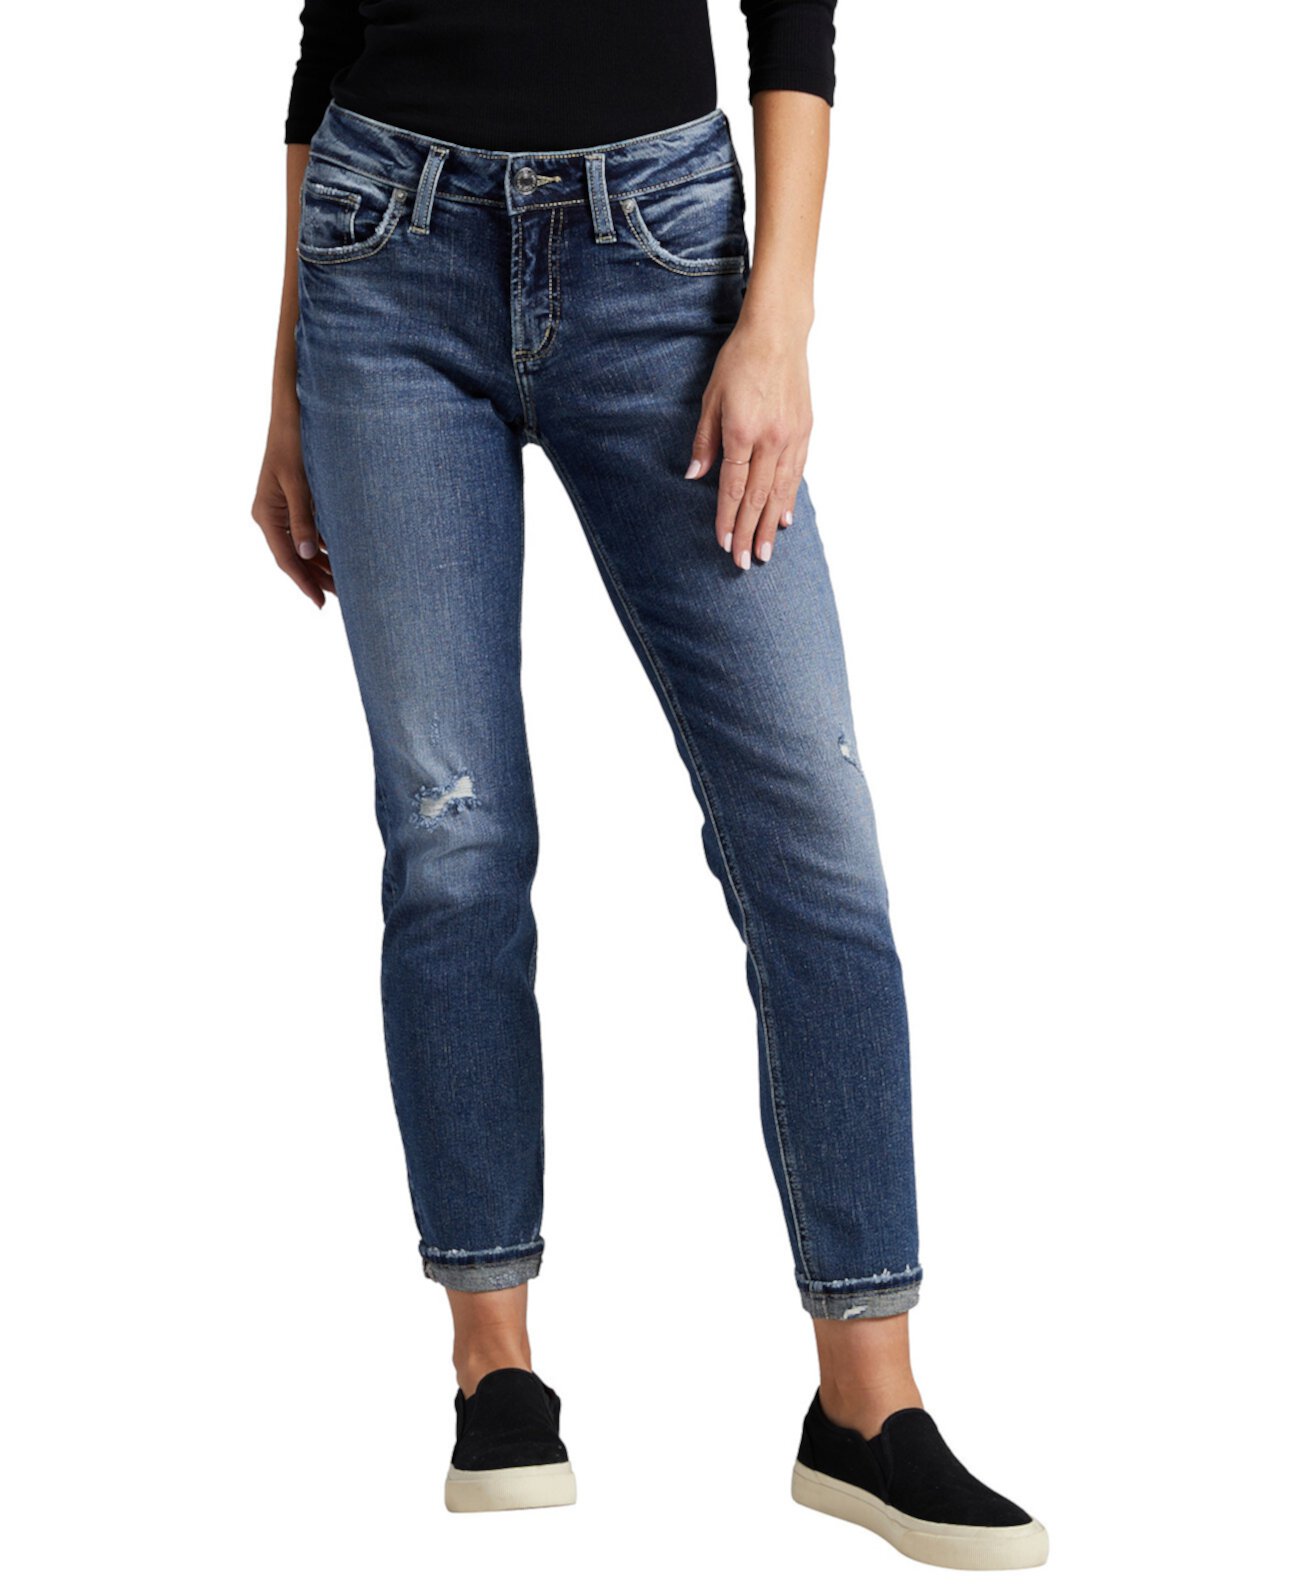 Женские зауженные джинсы-бойфренды со средней посадкой Silver Jeans Co.